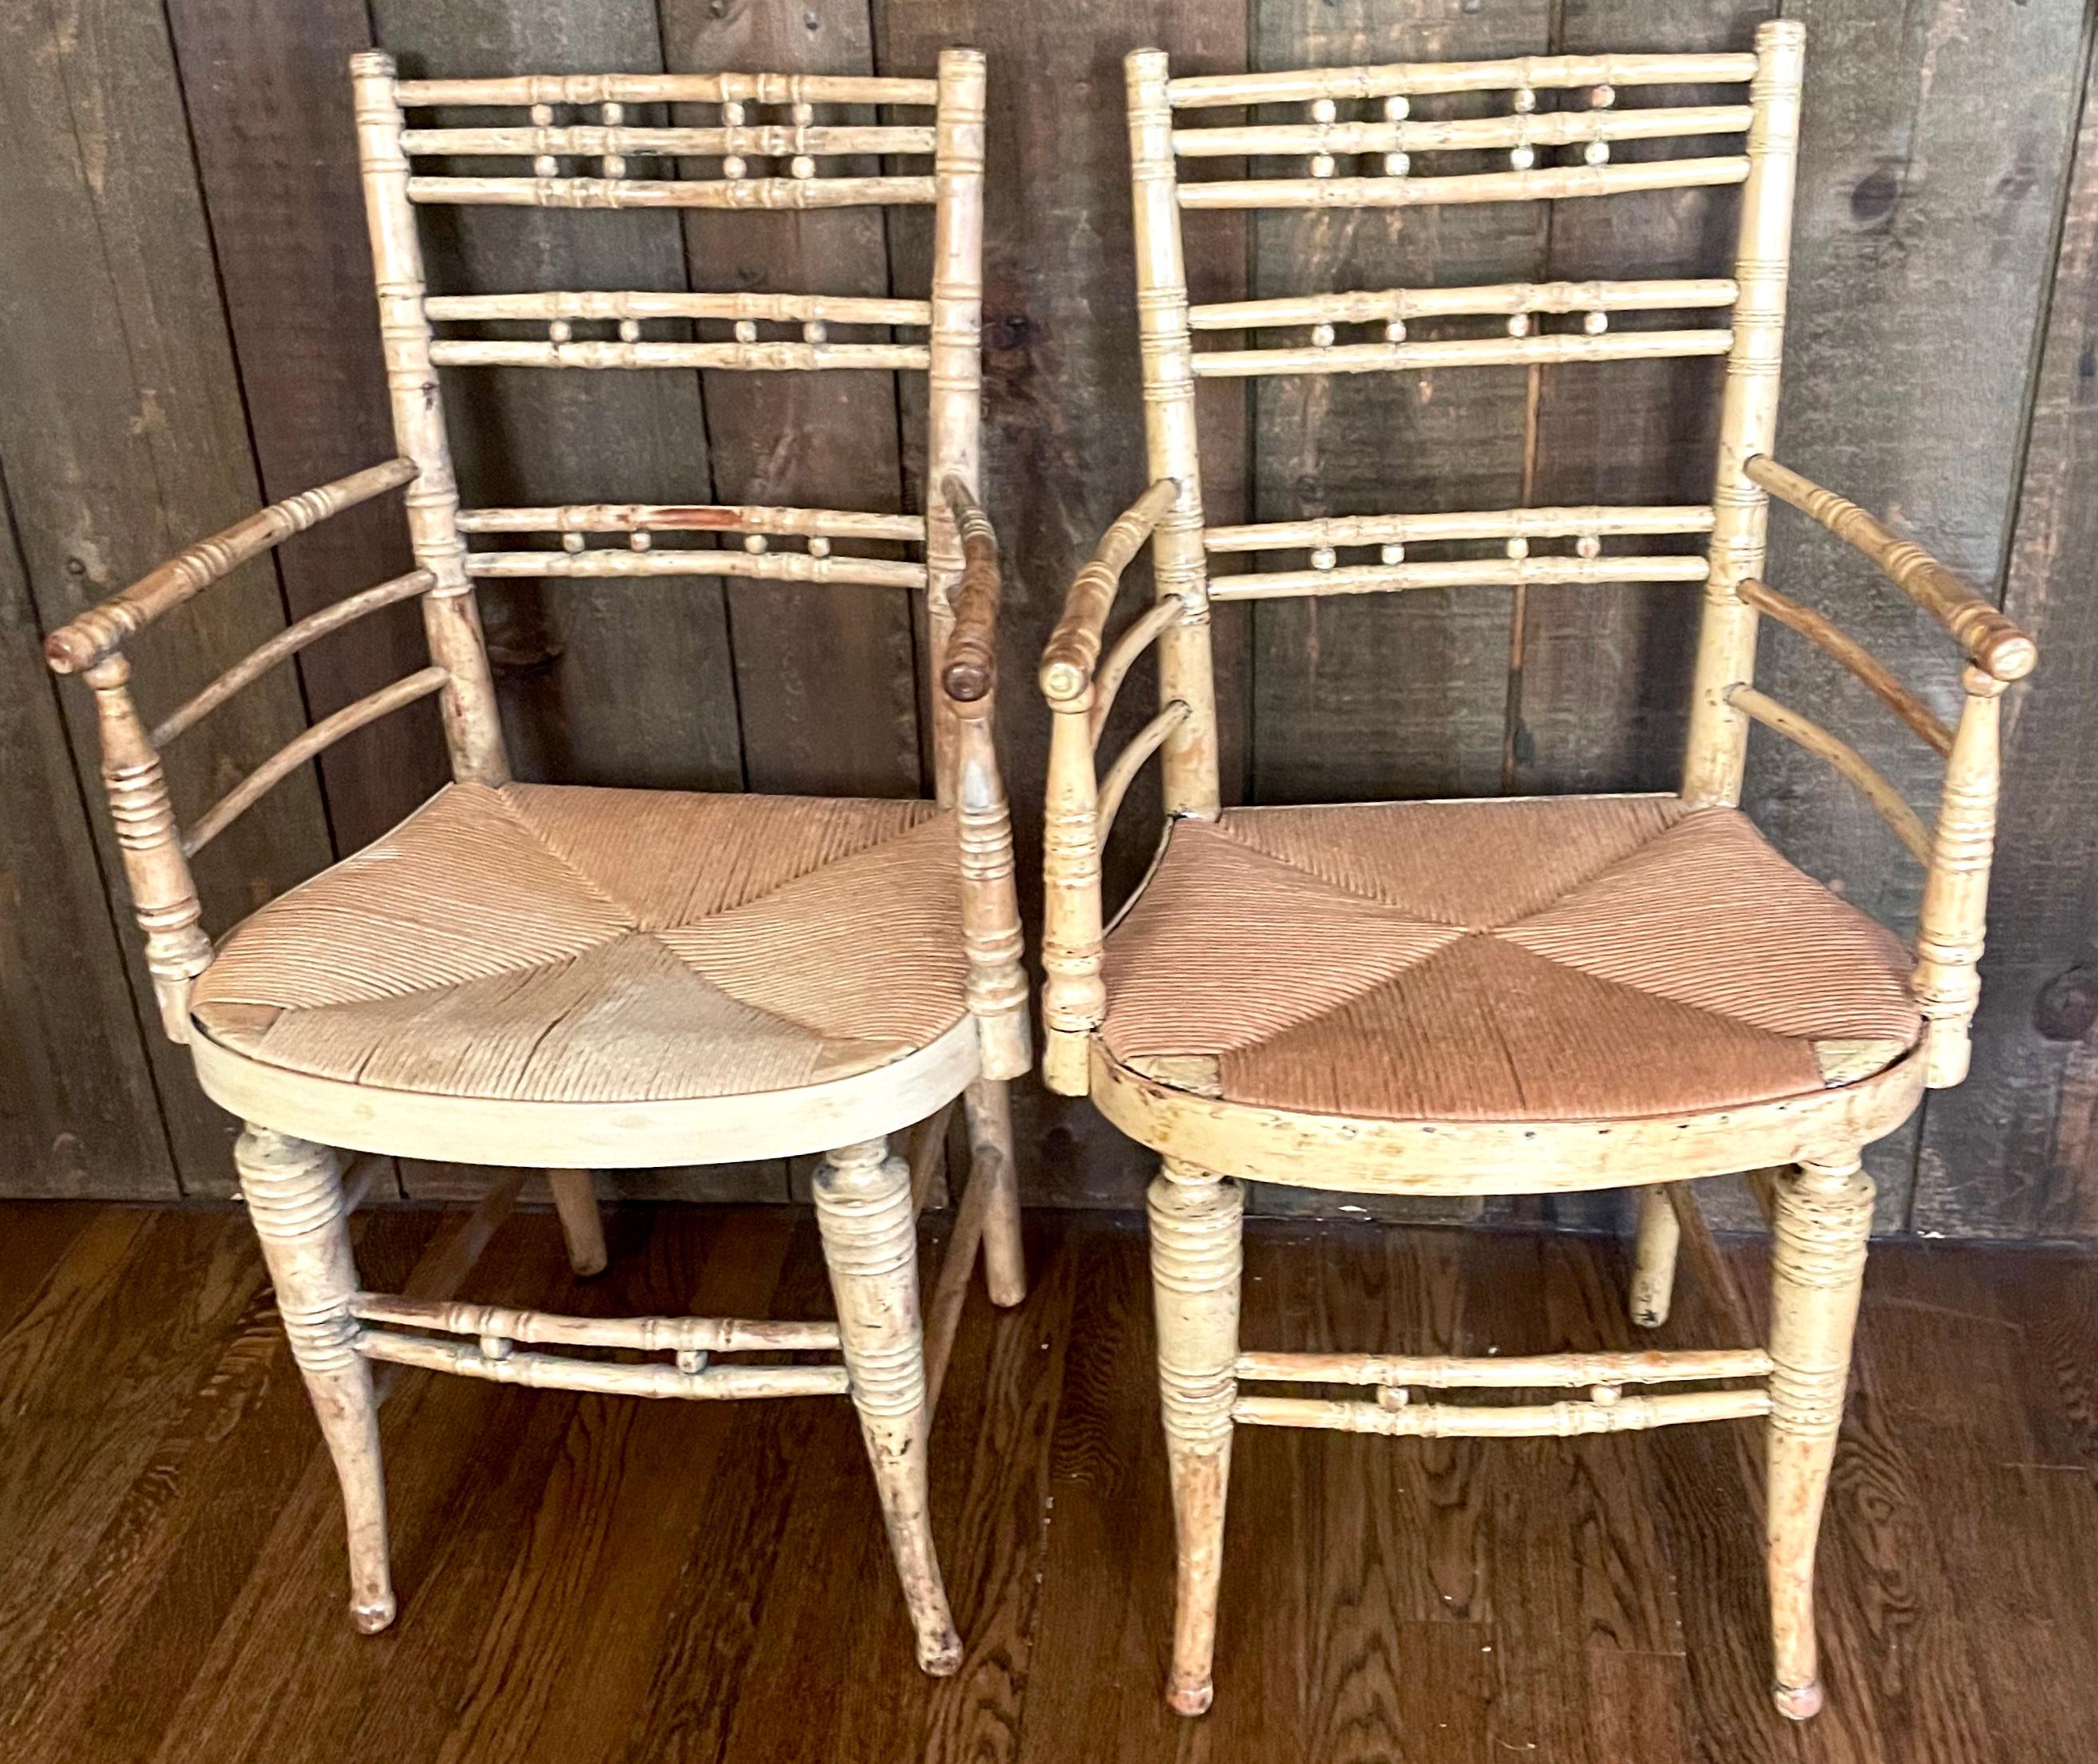 Satz von fünf amerikanischen Rush Chairs aus gedrechseltem Holz. Set aus zwei Armlehnstühlen und drei Beistellstühlen aus blondem Holz, bunt lackiert, mit geschnitzten bambusähnlichen Elementen und gedrechselten und gespreizten Beinen. Vereinigte